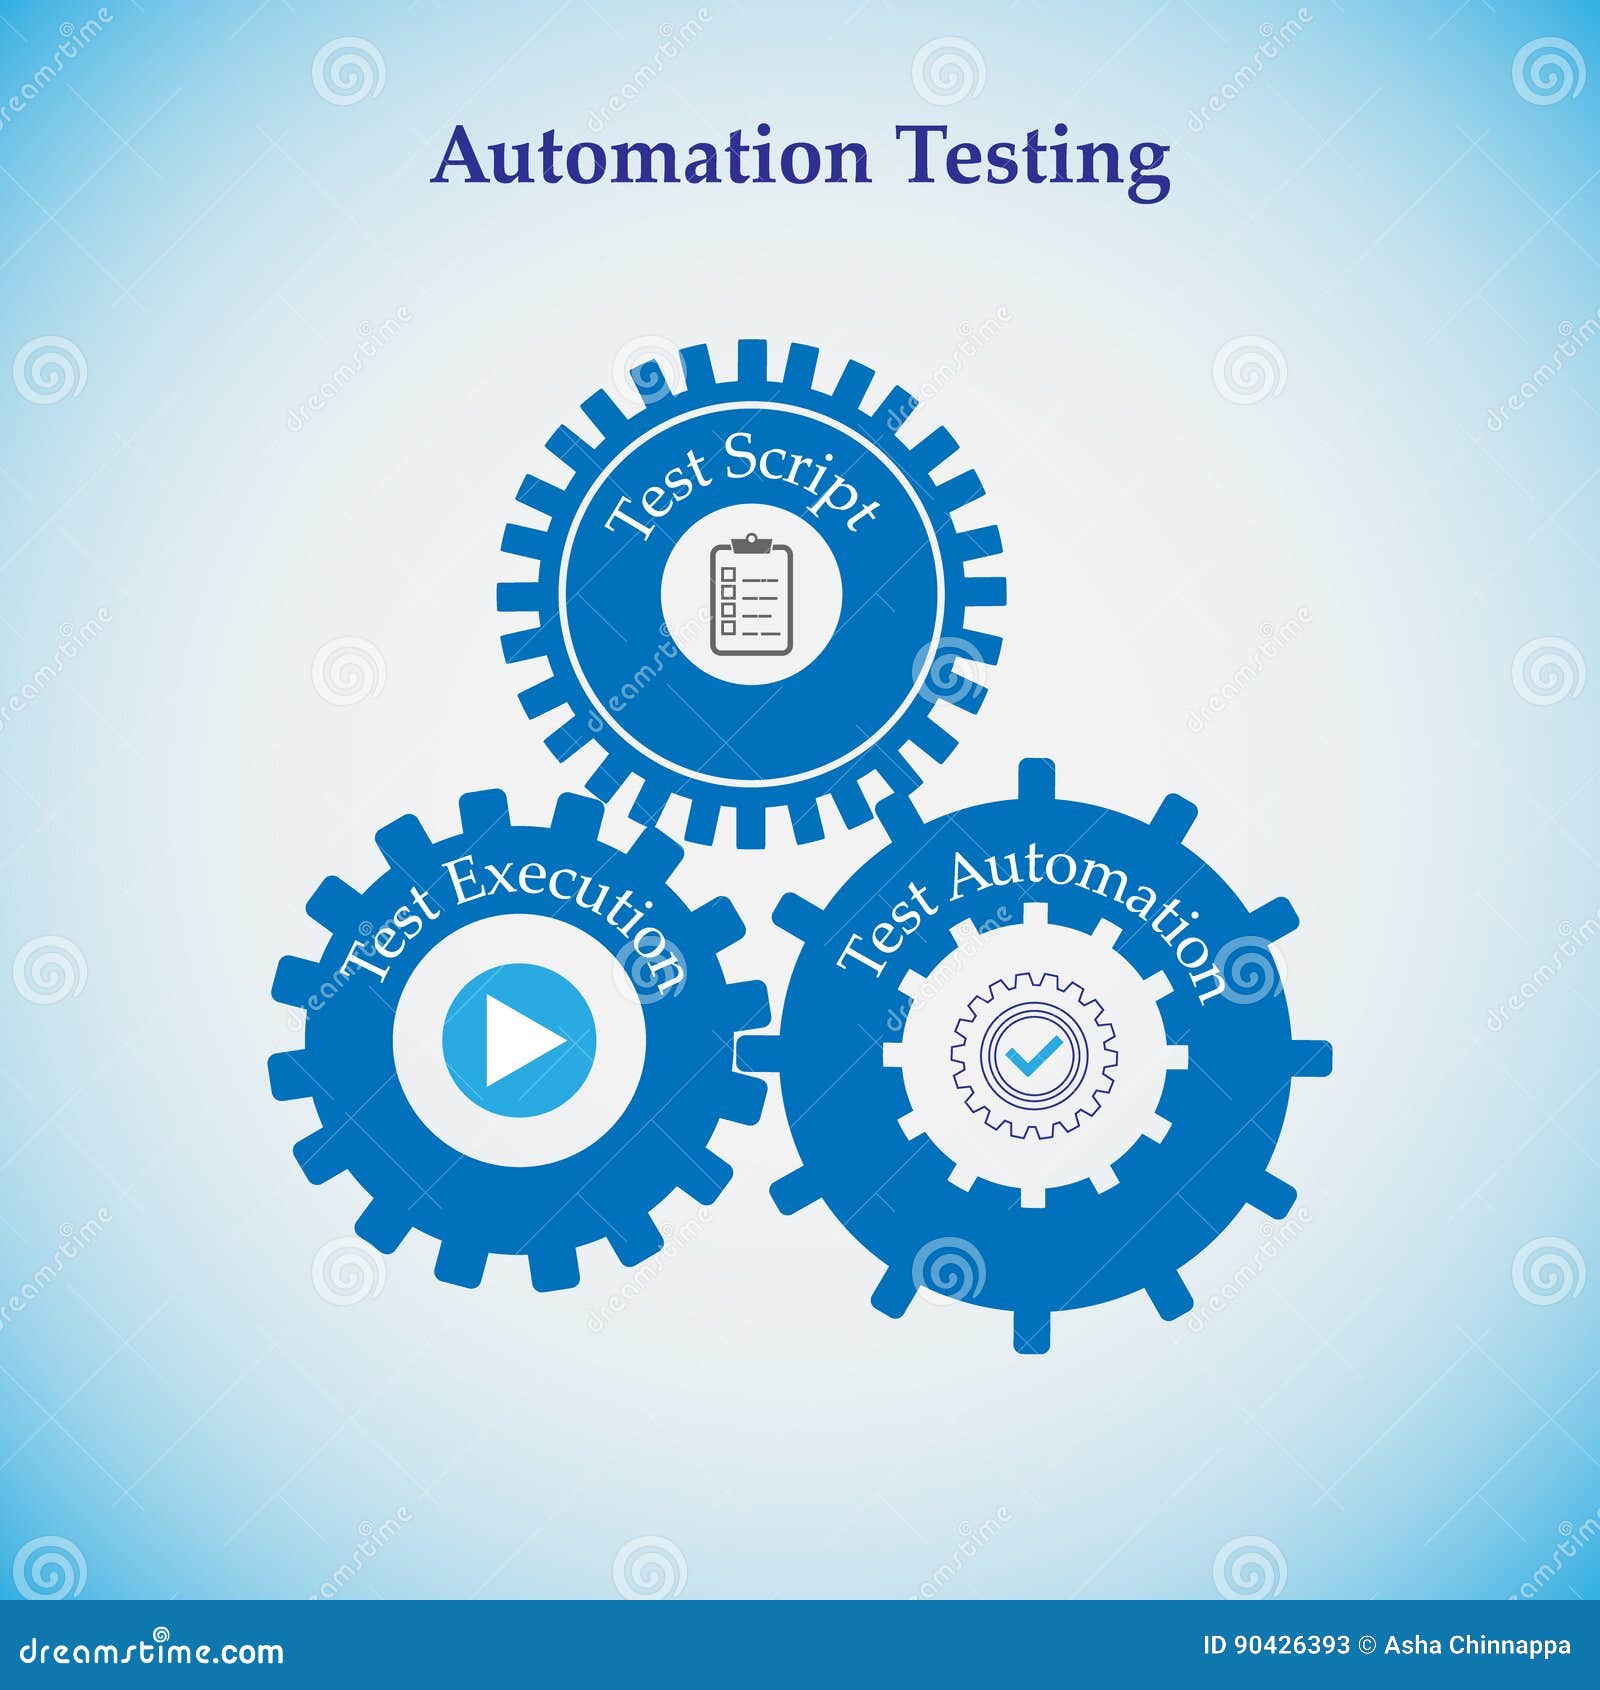 Manual Testing Explained – Software Testing – Webomates